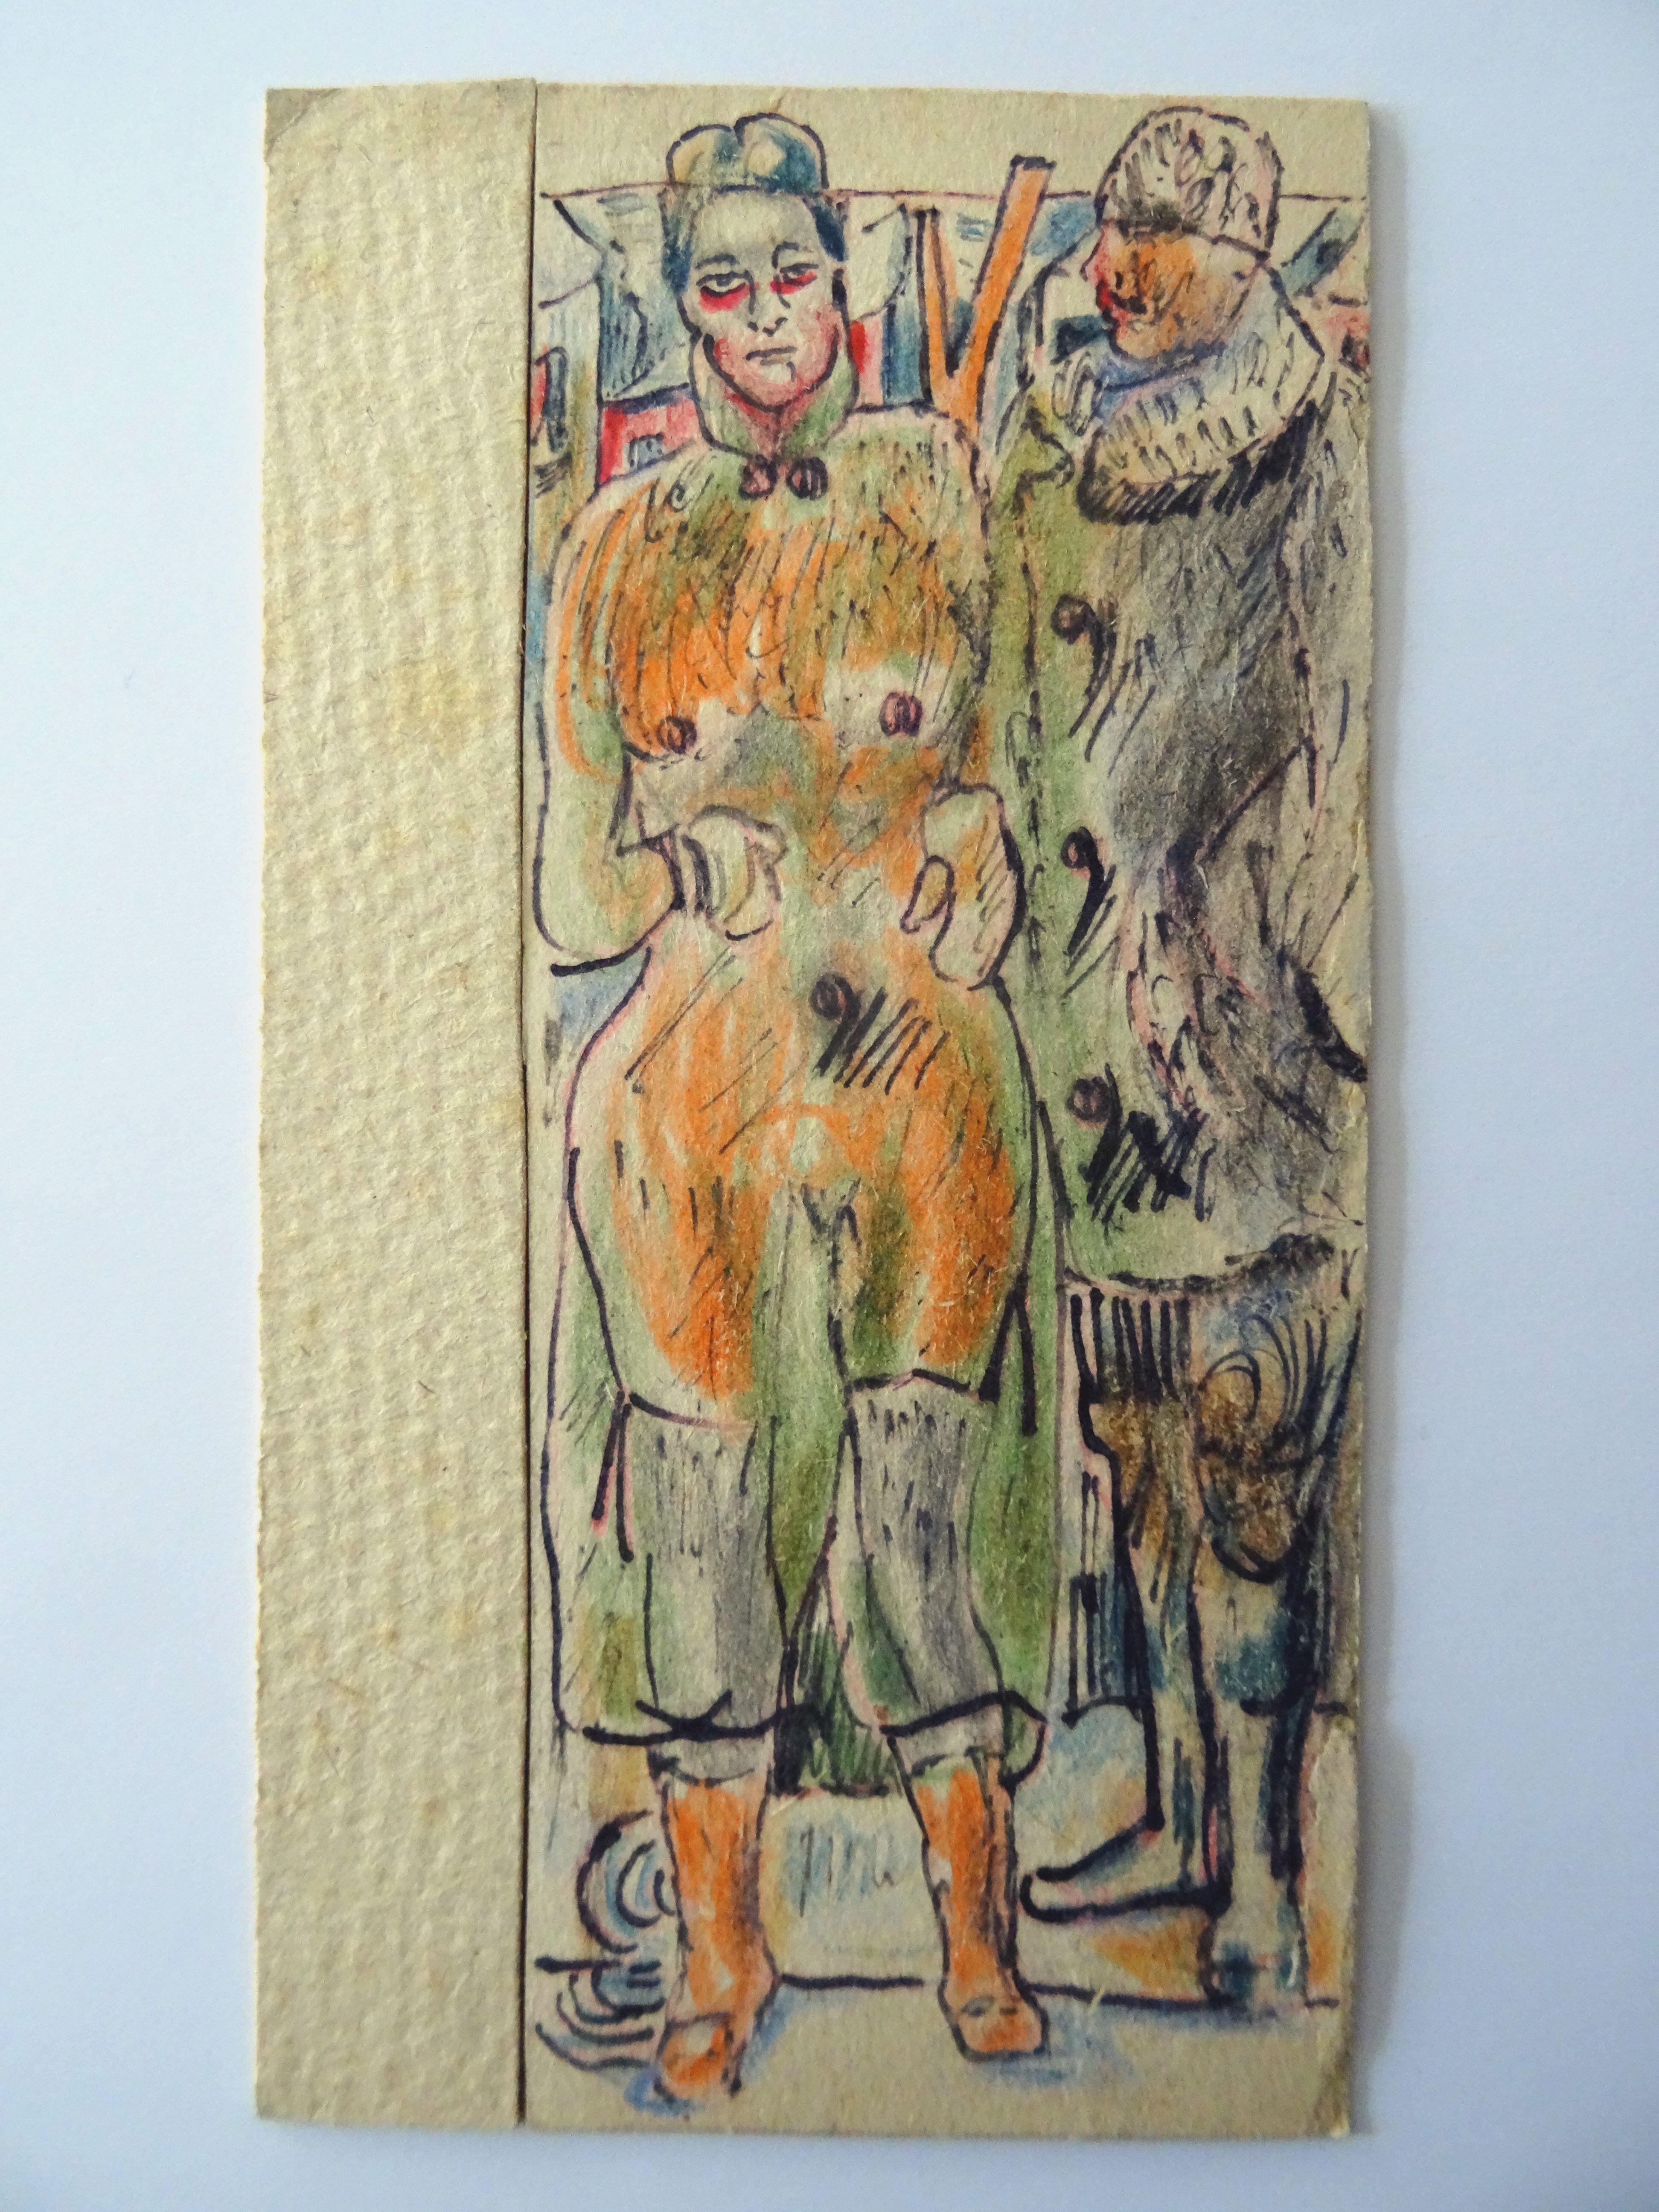 Mr. Millerson mit Frau 1959. Papier, gemischte Medien, 16x6,5 cm – Painting von Adolfs Zardins